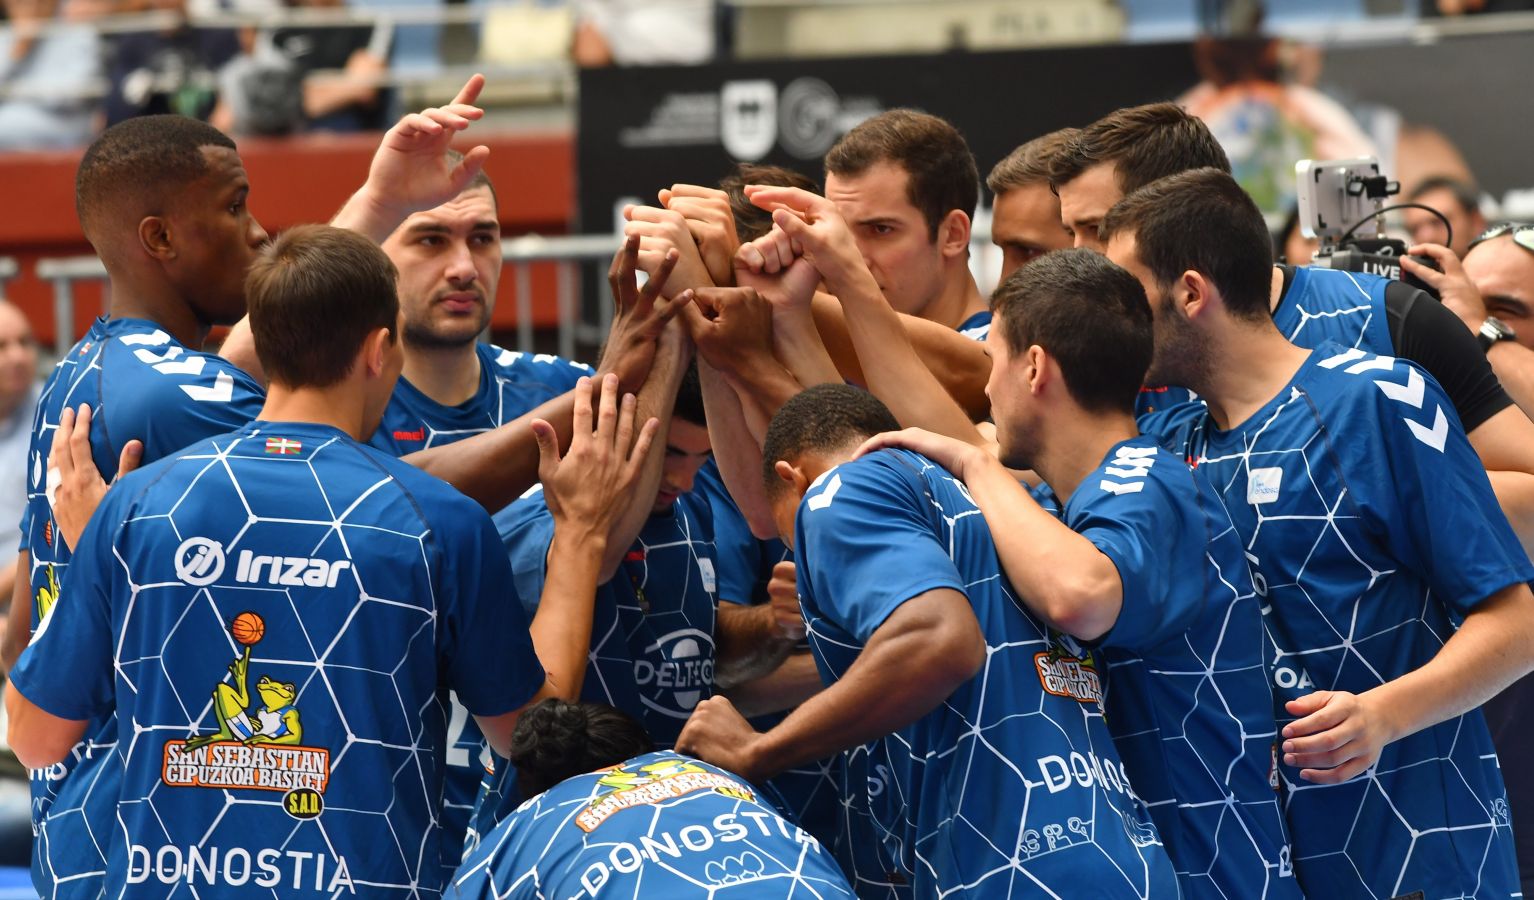 El equipo guipuzcoano cayó derrotado claramente ante el Fuenlabrada (60-76) en la primera jornada del campeonato.